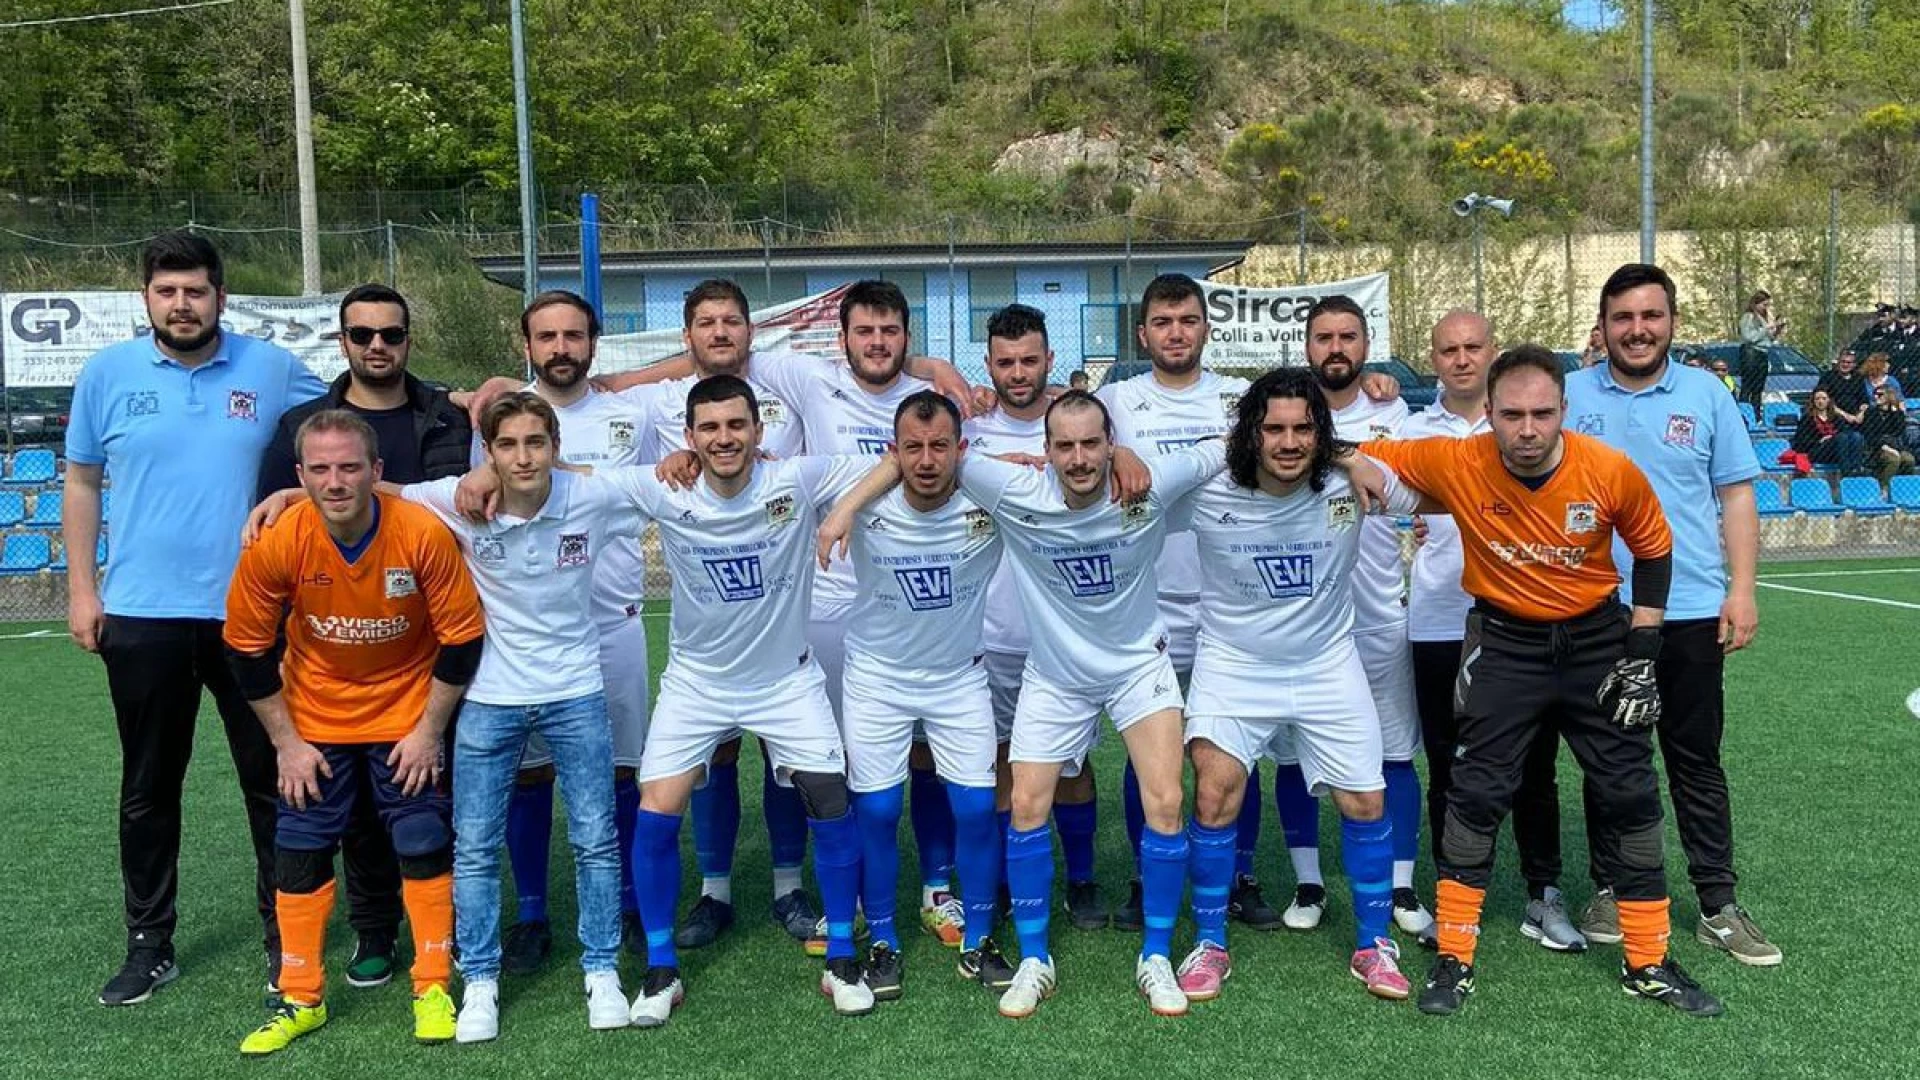 Calcio a 5 , serie C1: nel pomeriggio ultima gara Play-Off tra Futsal Colli a Volturno e Roccaravindola.